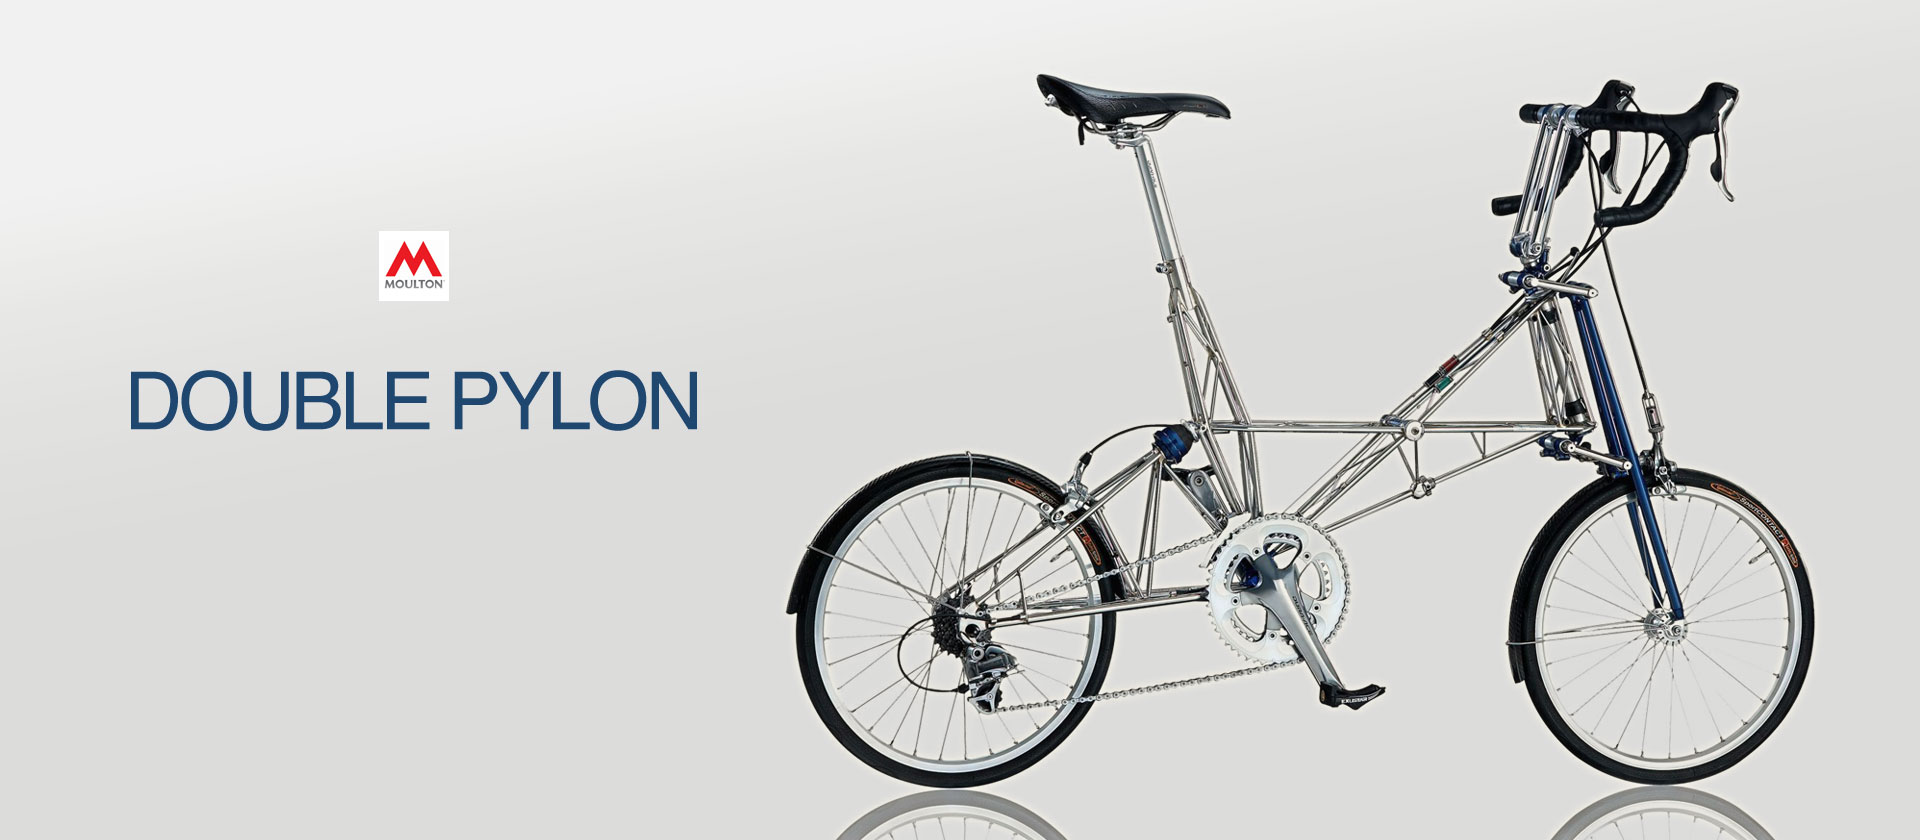 ミニベロ 小径車ならmoulton モールトン自転車 ダイナベクター